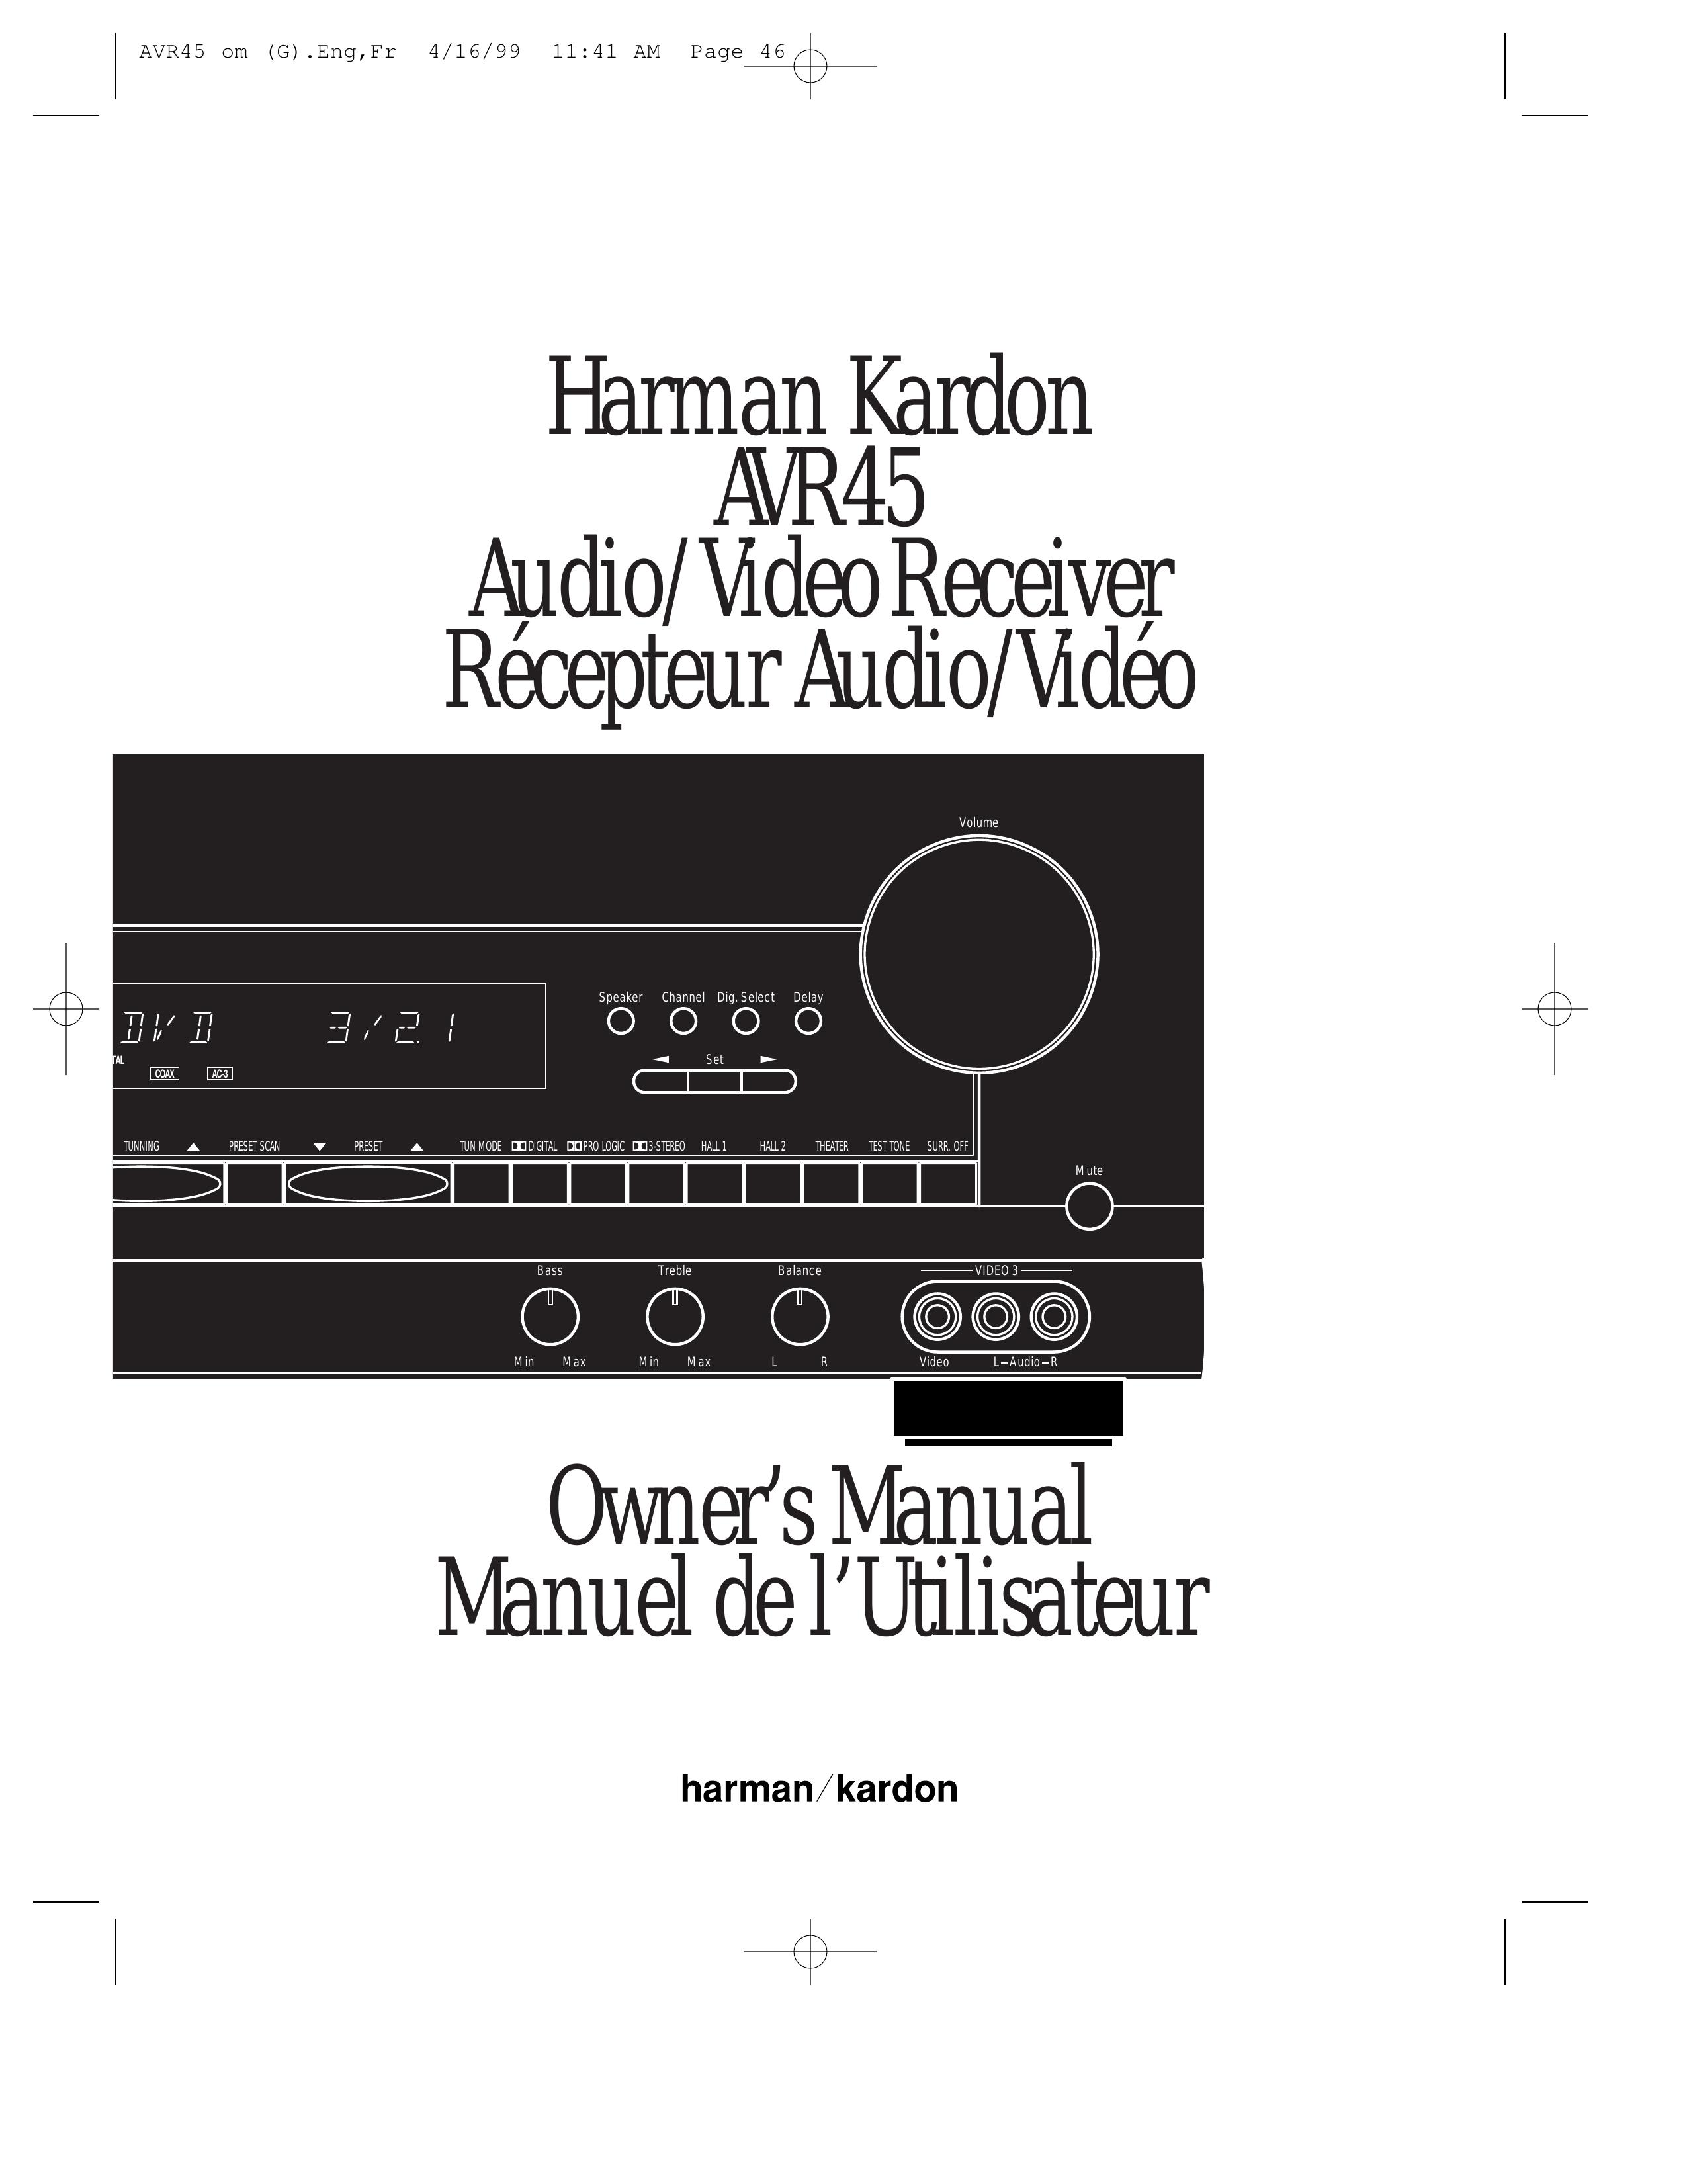 Harman-Kardon AVR45 Digital Camera User Manual